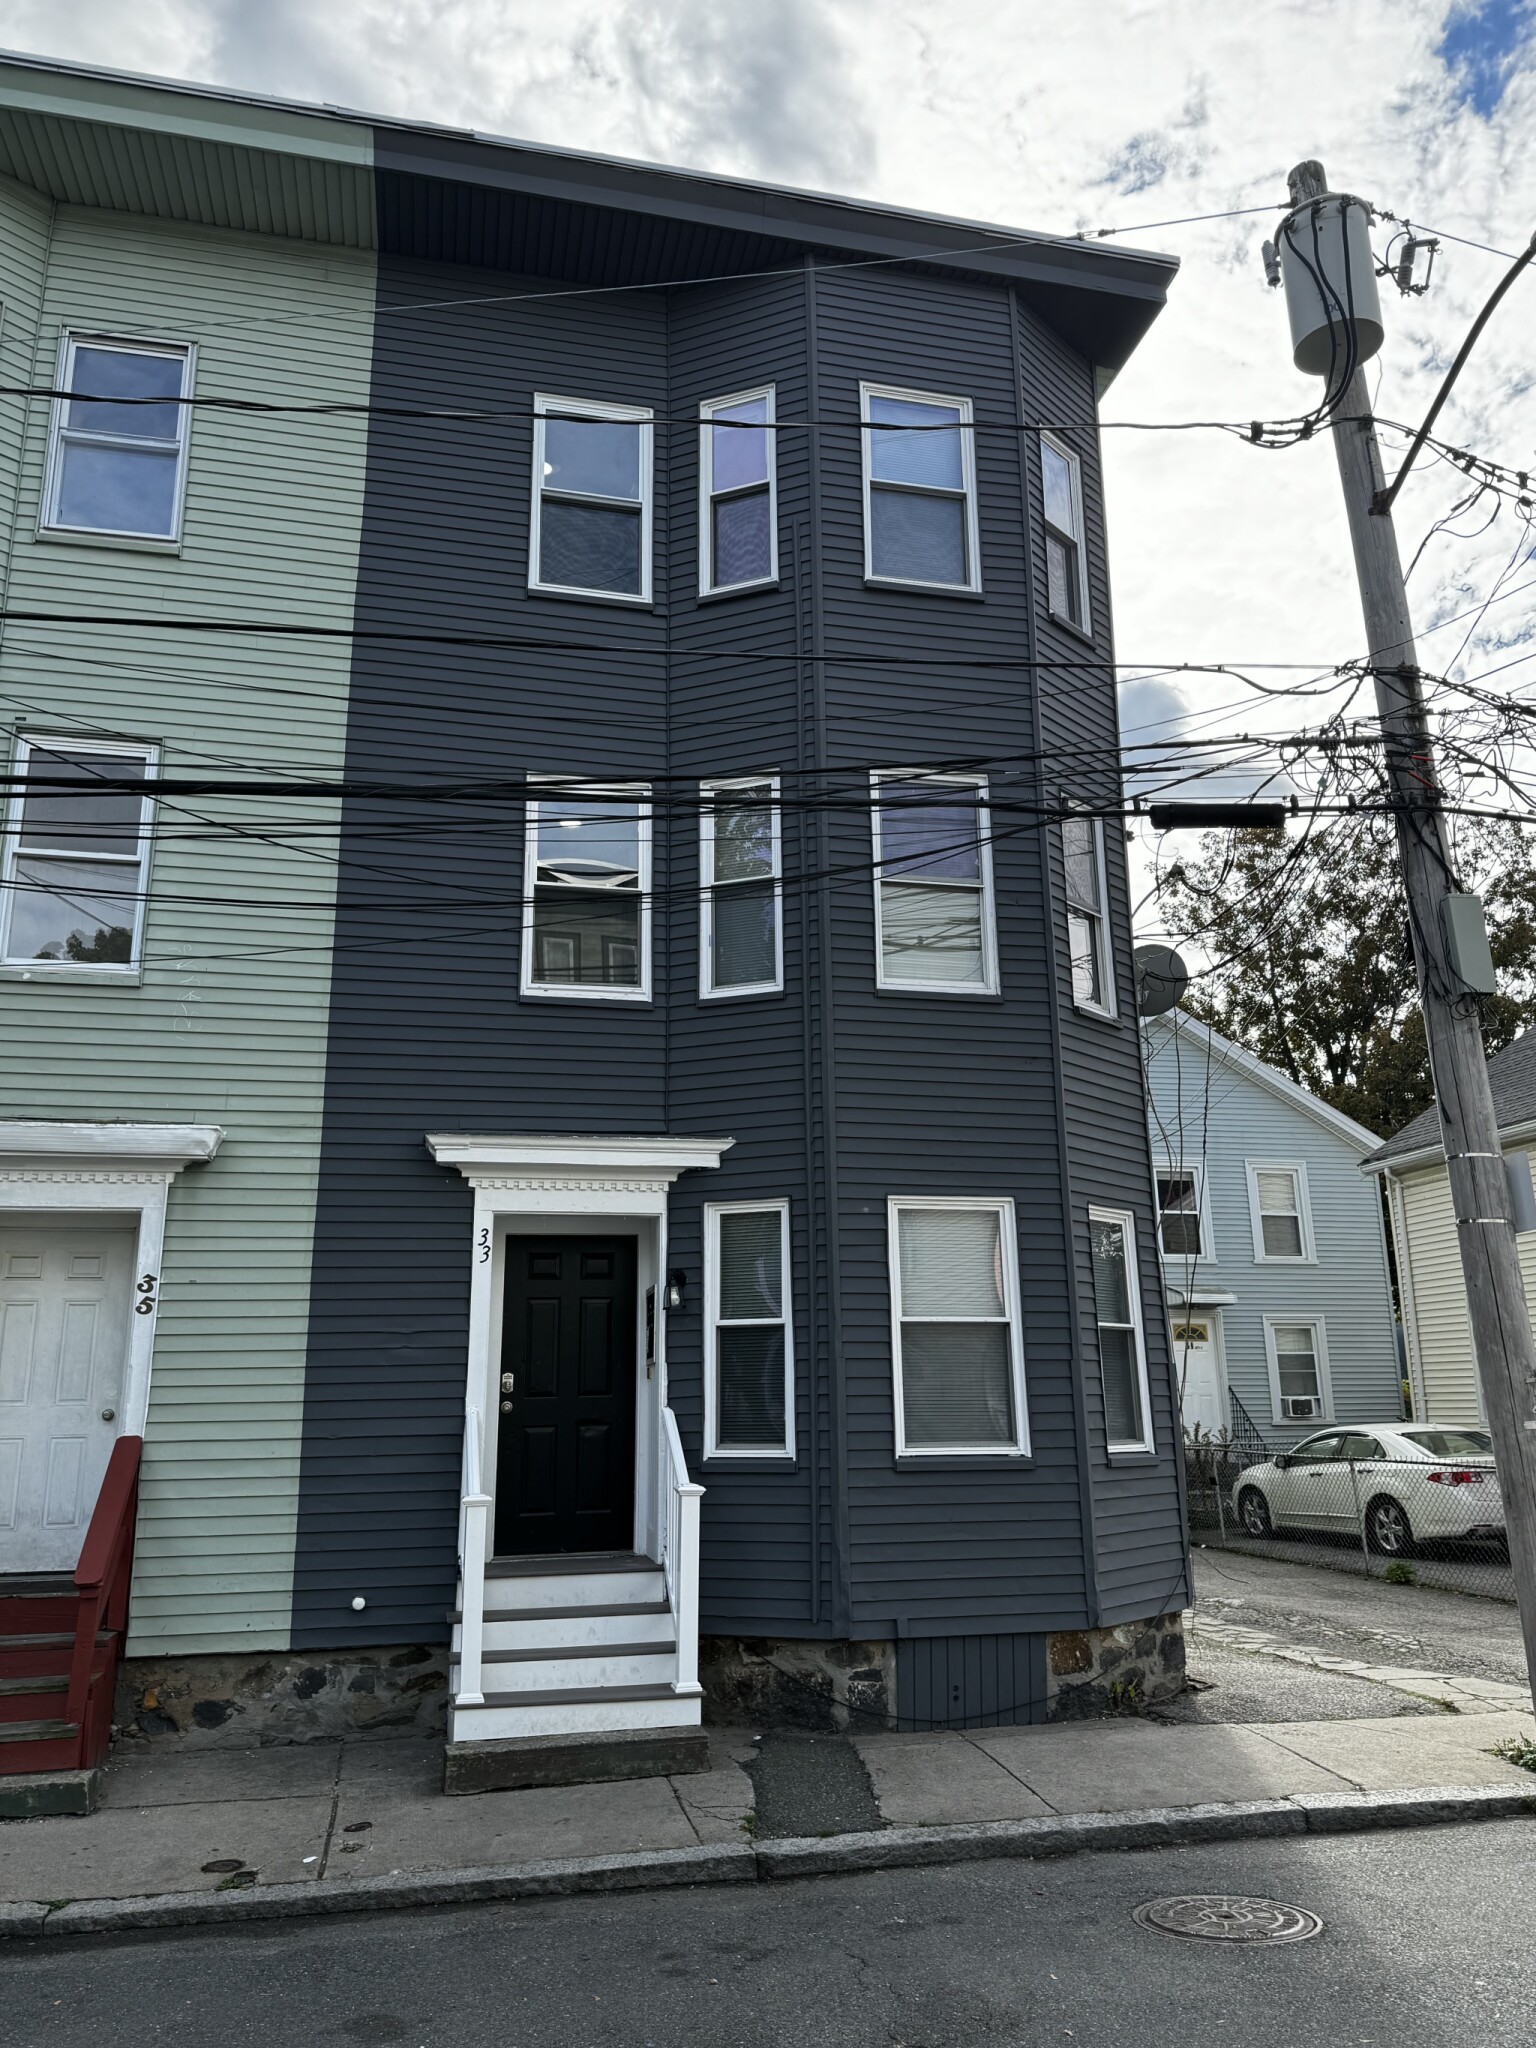 Photos of apartment on Linden,Boston MA 02134